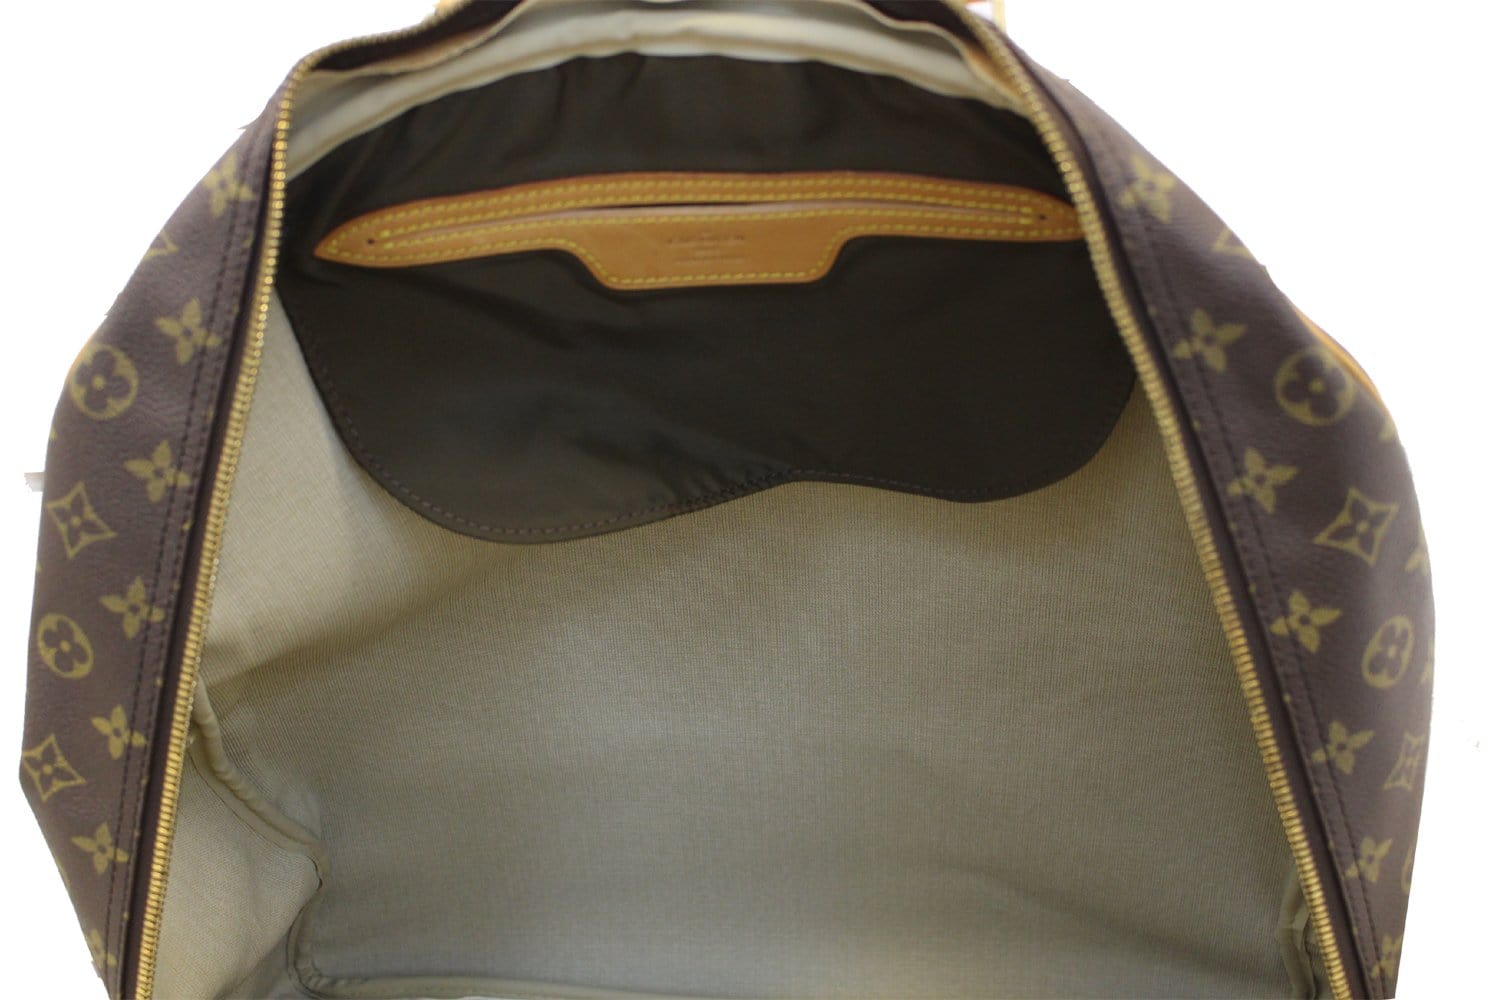 Louis Vuitton - evasion travel Bag - Travel bag - Catawiki